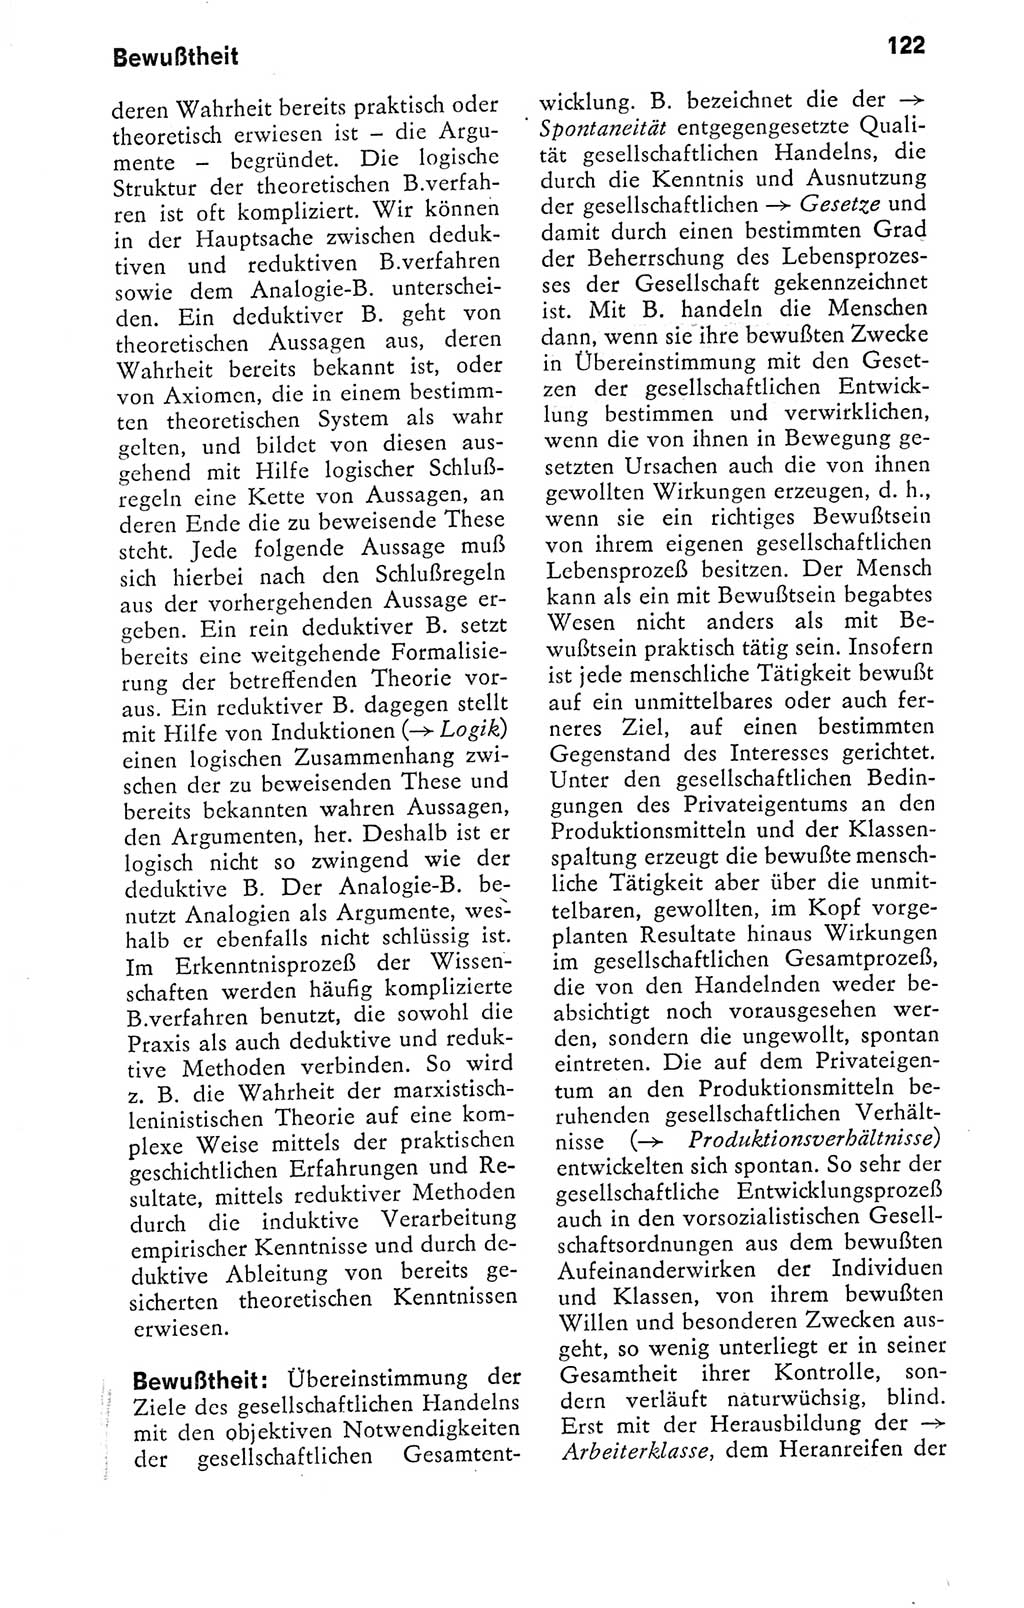 Kleines politisches Wörterbuch [Deutsche Demokratische Republik (DDR)] 1978, Seite 122 (Kl. pol. Wb. DDR 1978, S. 122)